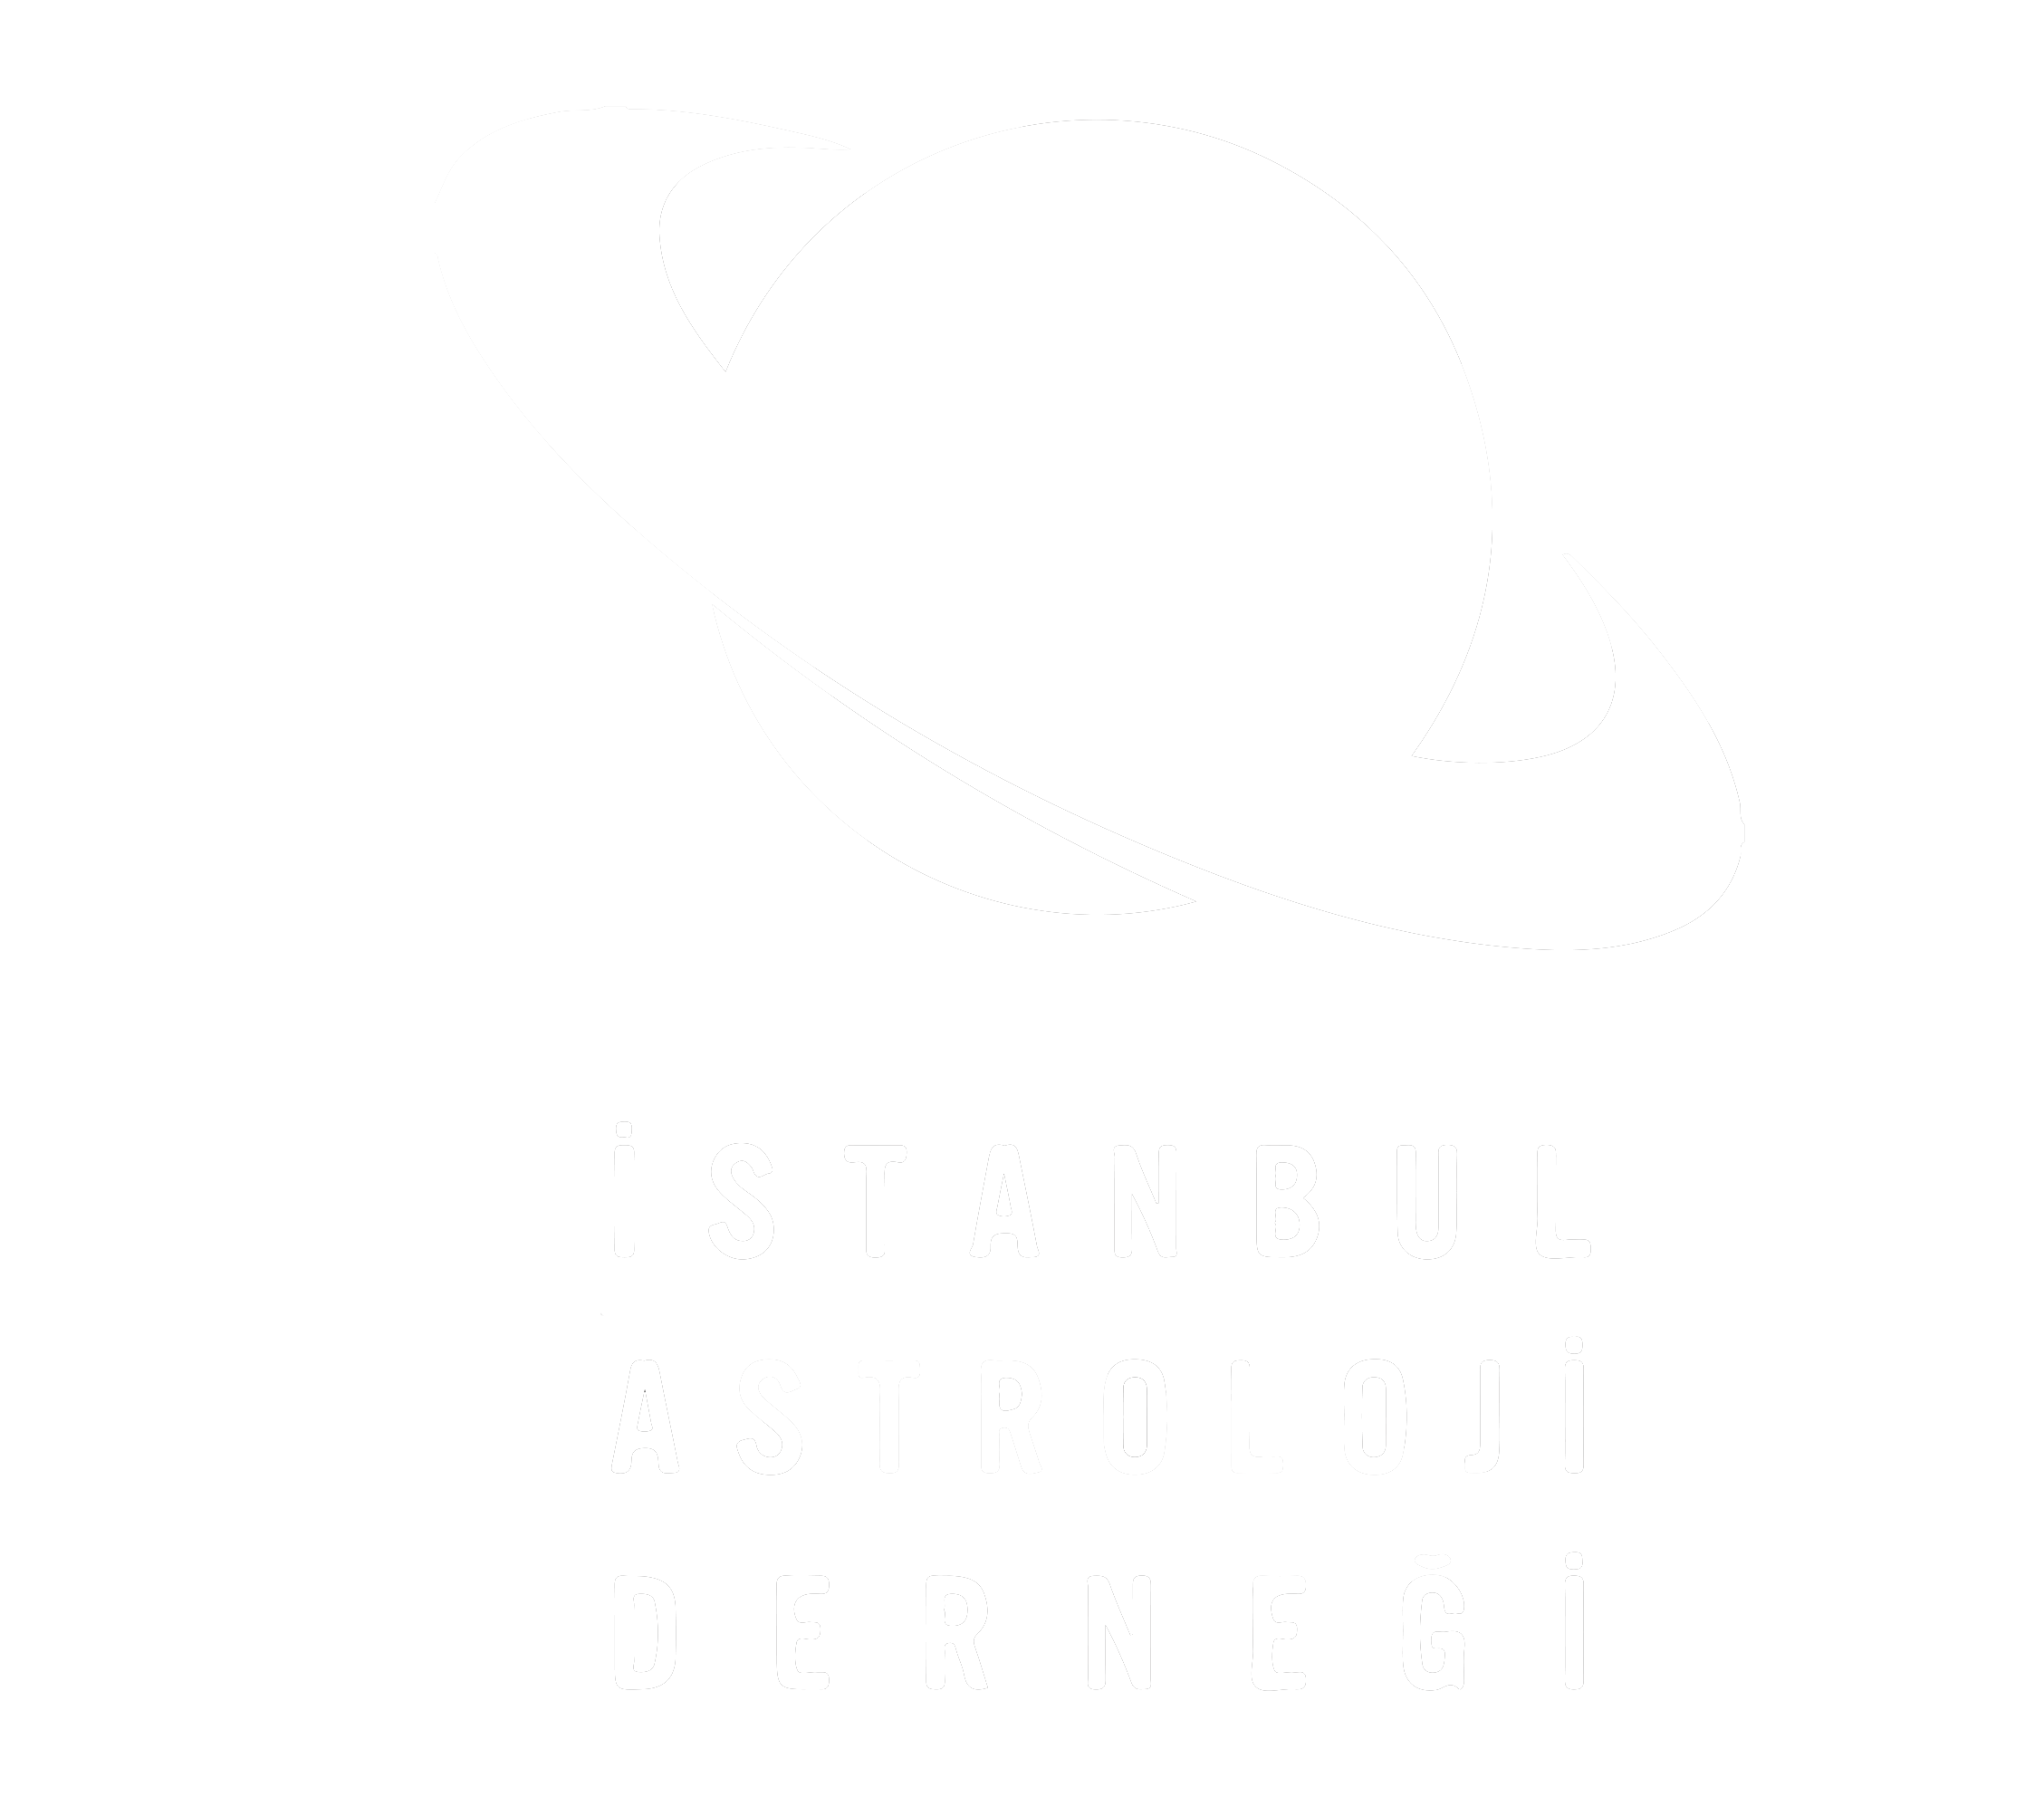 istanbul astroloji derneği